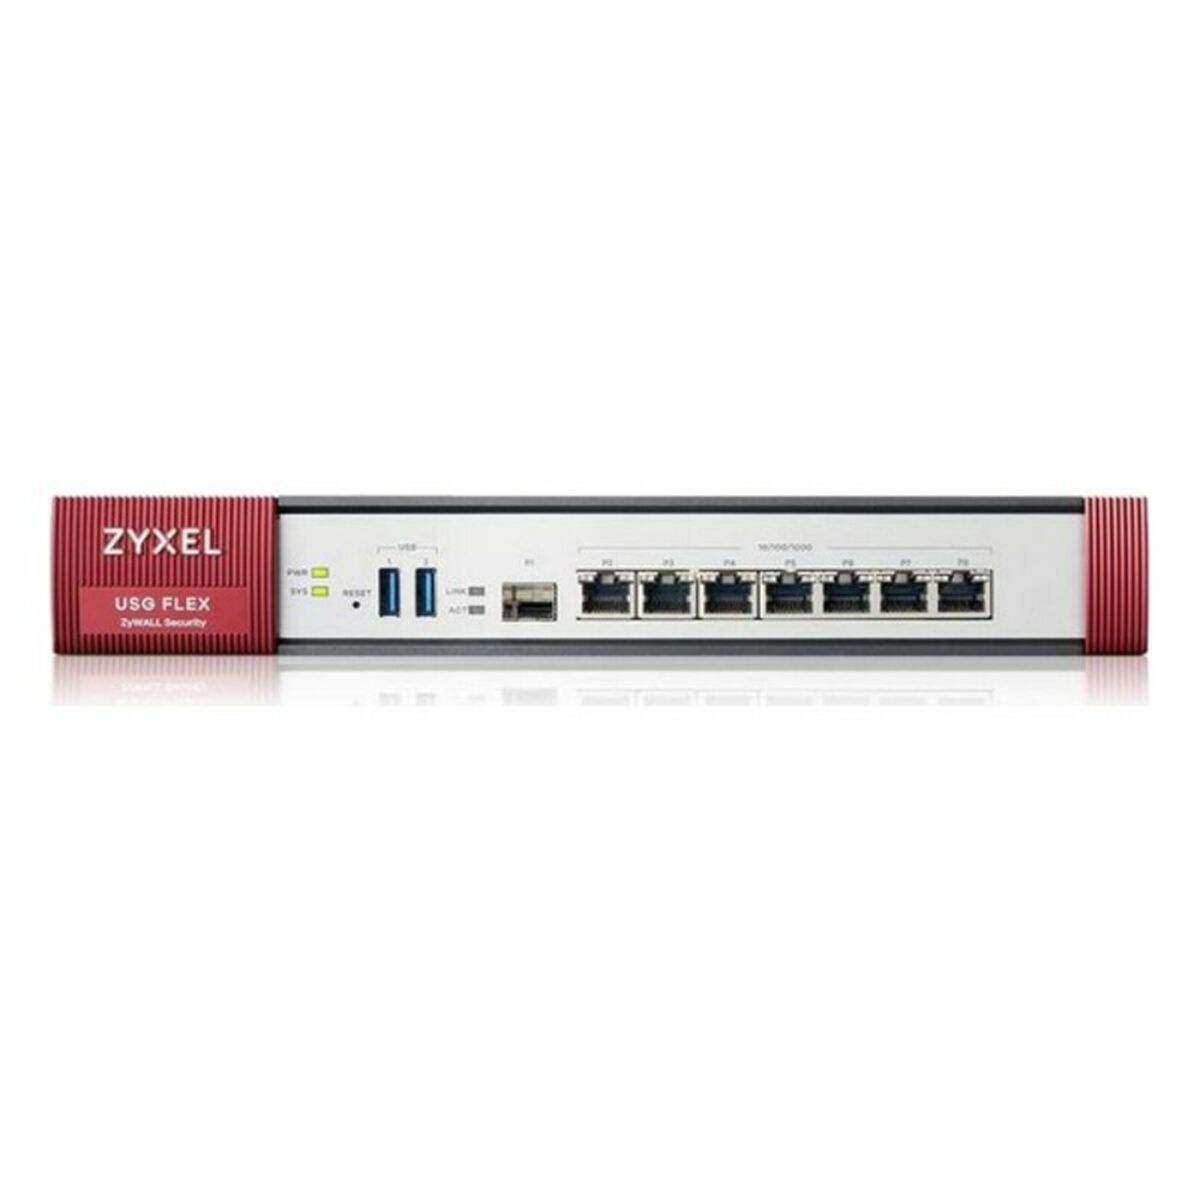 ZYXEL USGFLEX500-EU0101F Firewall